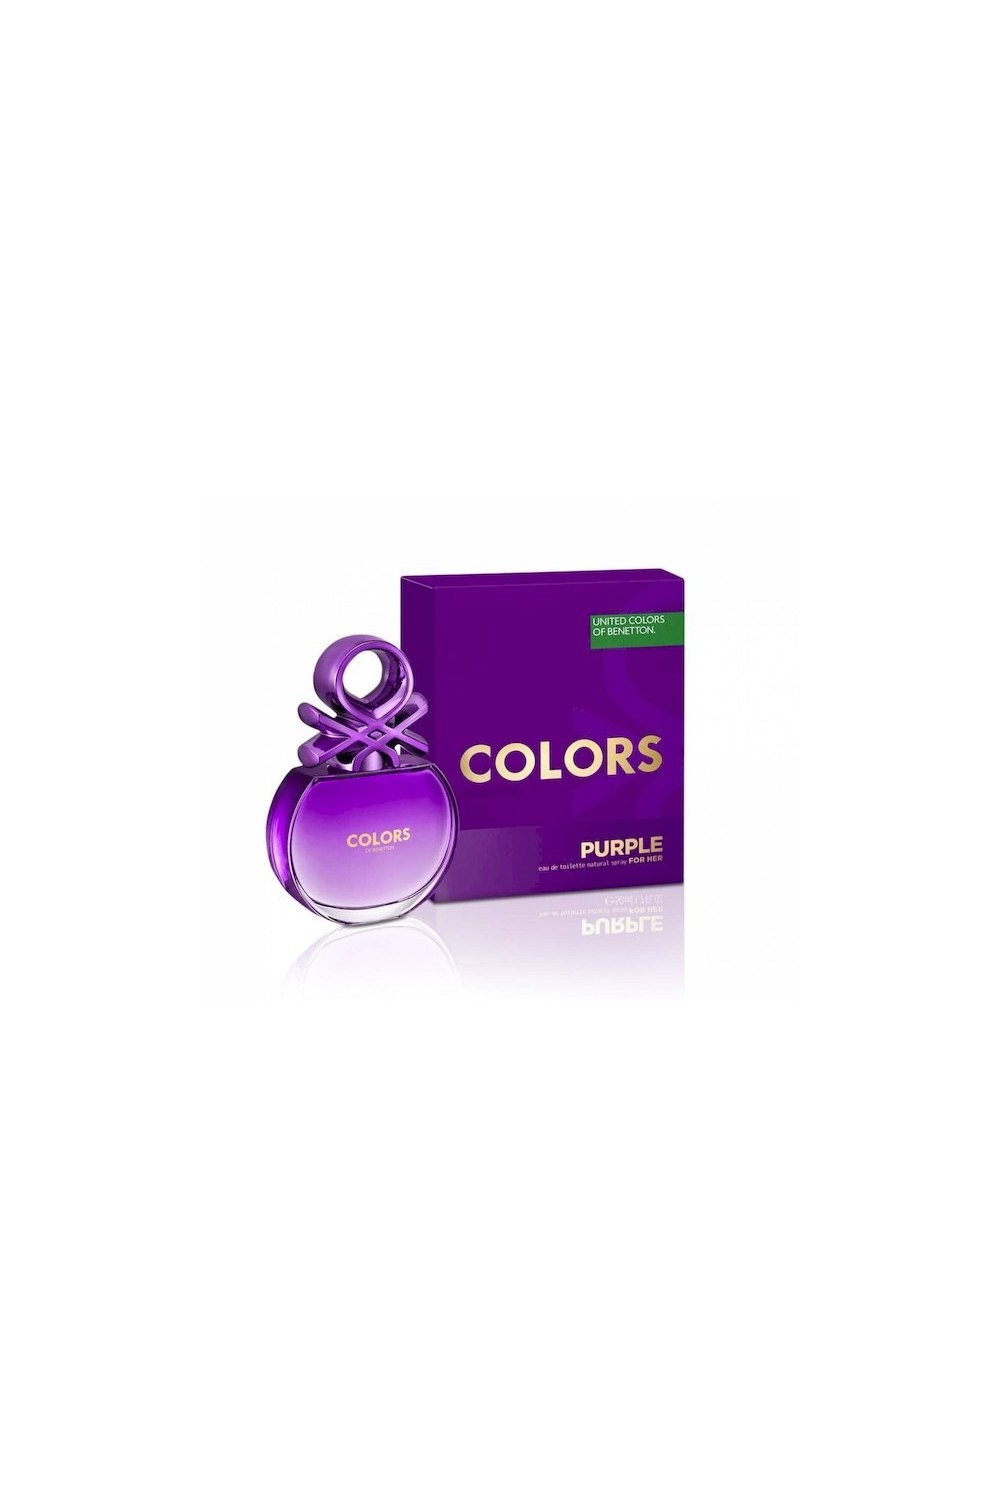 Benetton Colors Purple Eau De Toilette 80ml Spray